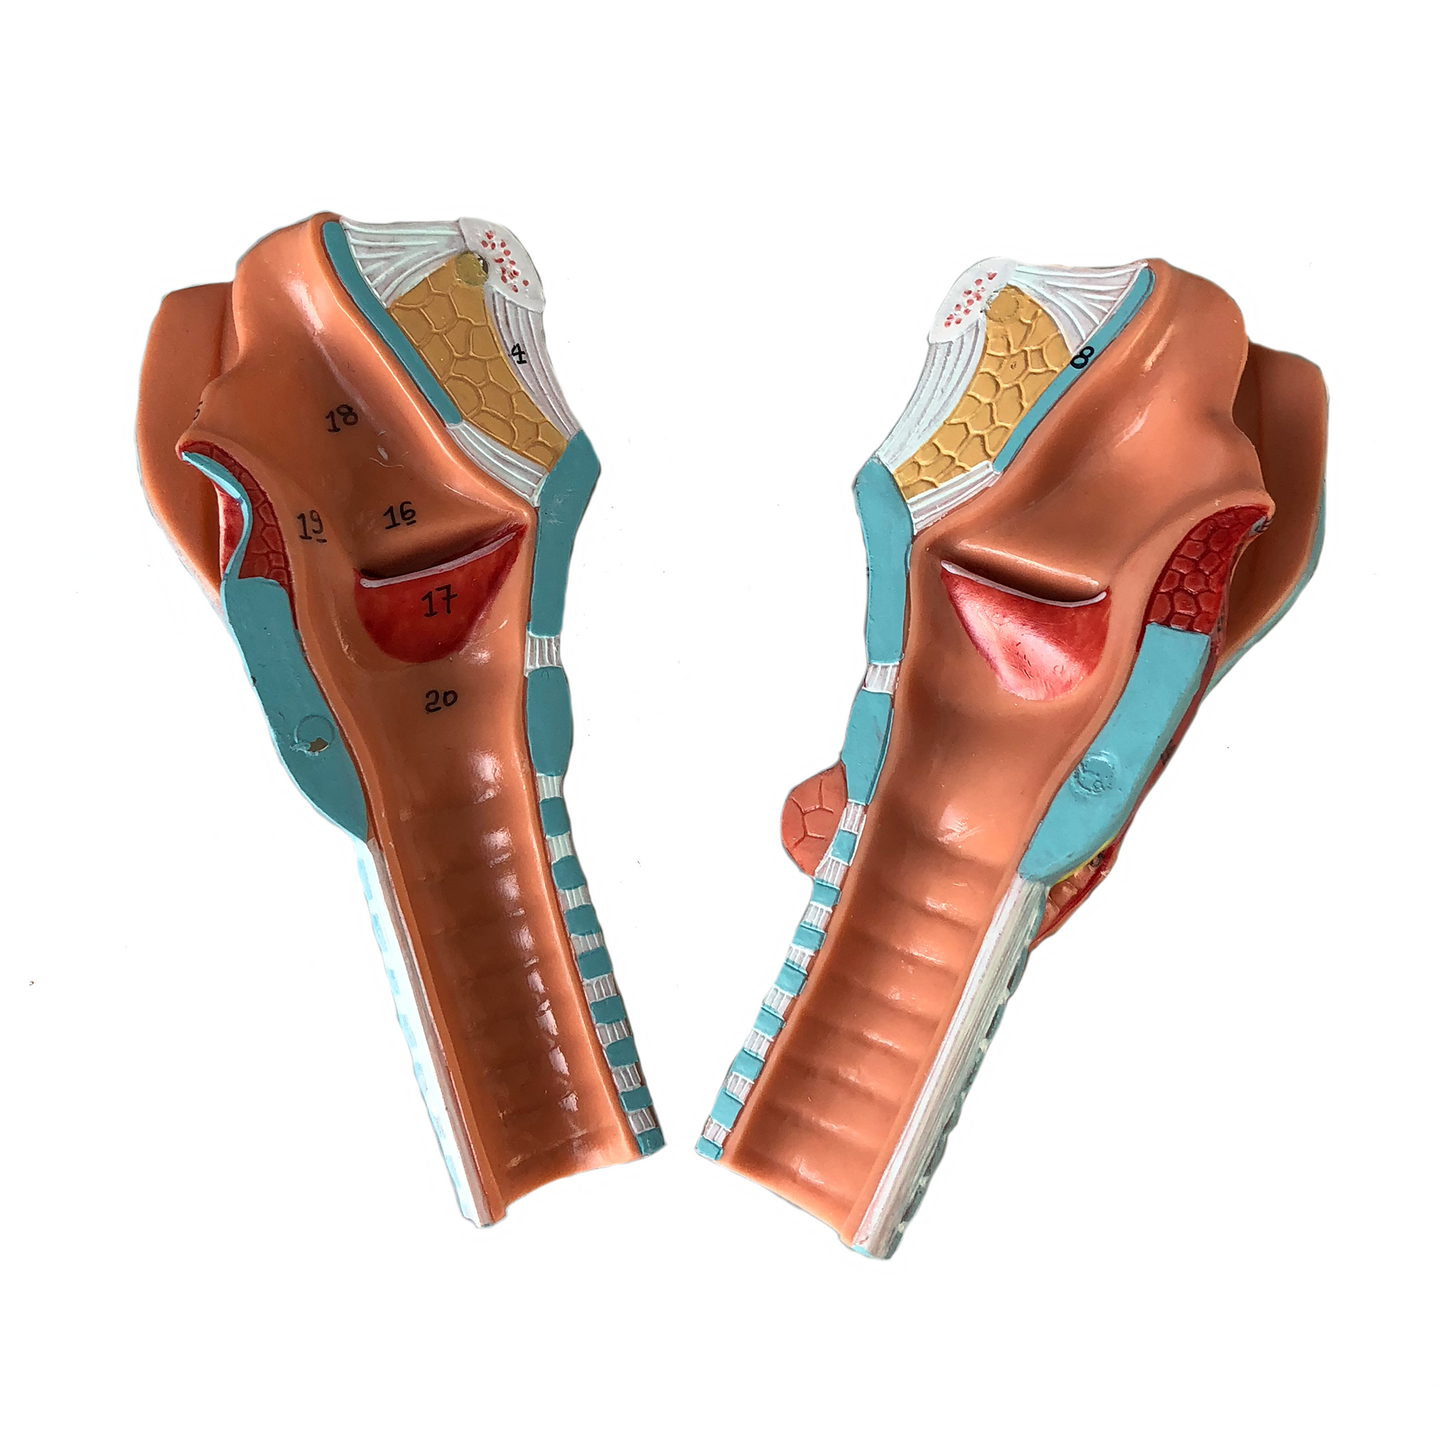 Larynxmodell med stämband och flera andra vävnader. Kan delas upp i 5 delar